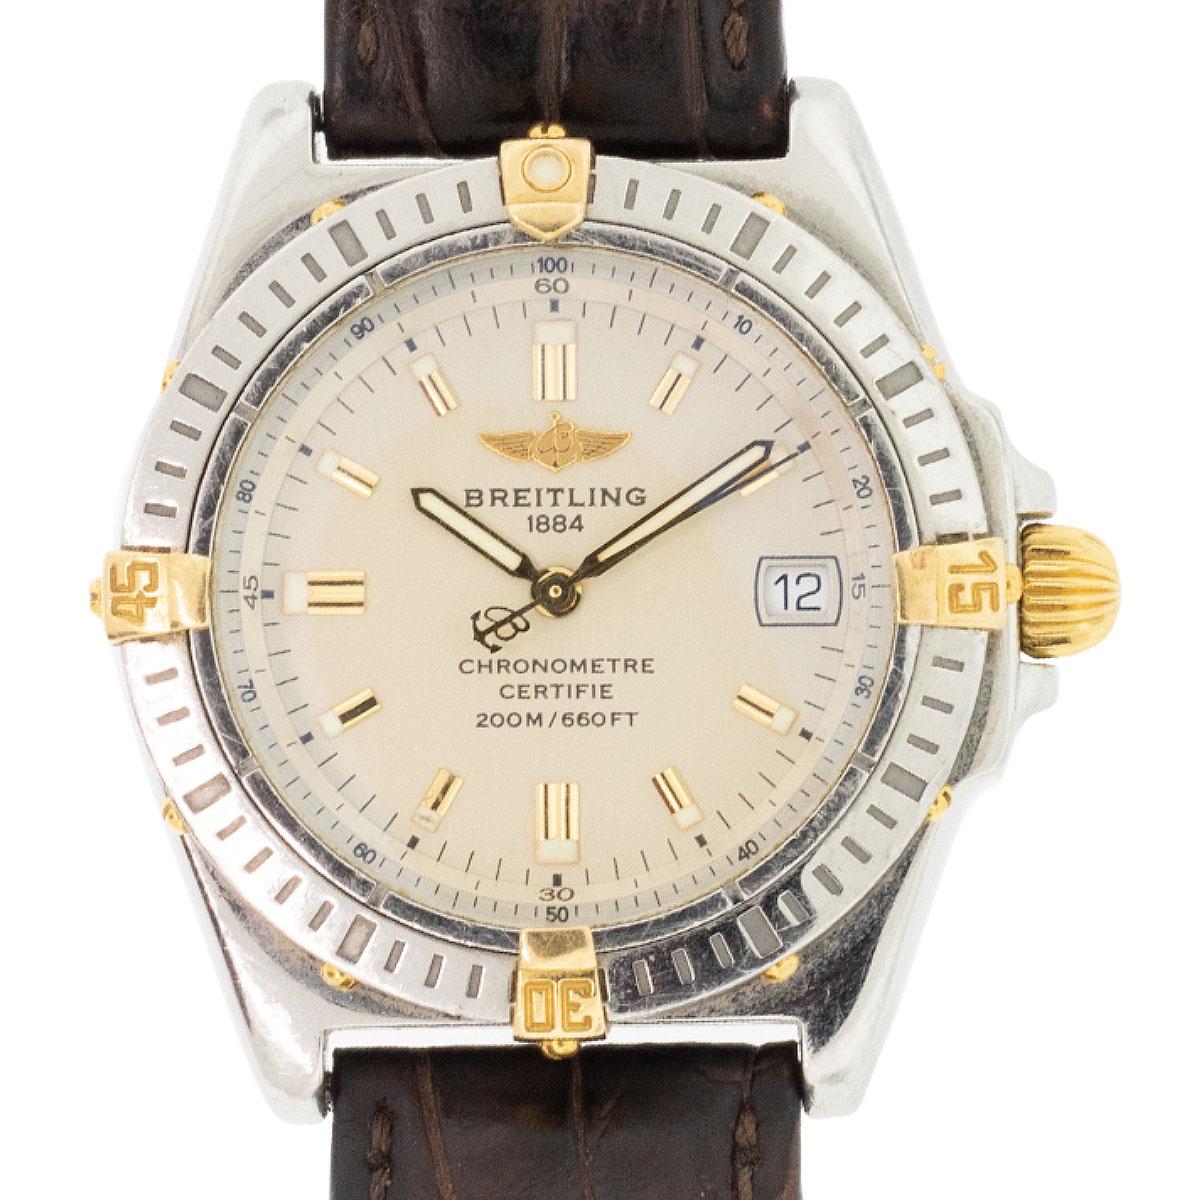 Reloj Breitling B77346 Callisto Two Tone Vintage para señora

La elegancia y la sofisticación se encarnan en el Breitling B77346 Callisto, un reloj femenino vintage que trasciende el tiempo. Con su diseño atemporal y su impecable artesanía, este